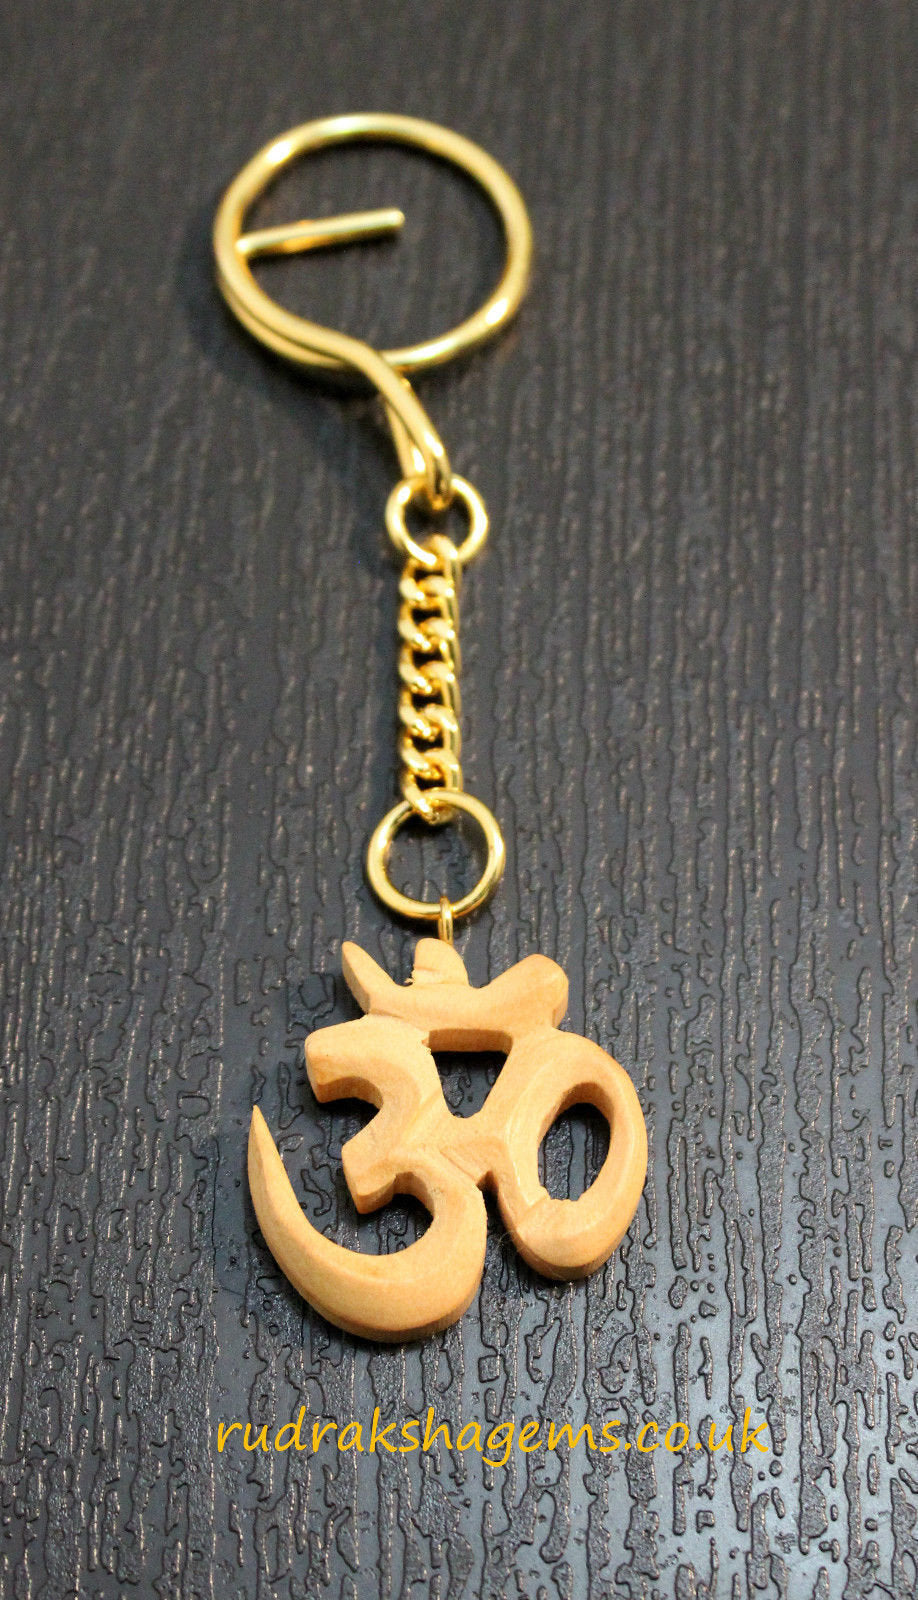 Om Key Ring, Namaste Keychain, Wooden Hand carved Keychain Buddhist Keyring Gift For Him Or Her, Aum Ohm Keychain, Birthday Gift, Yoga Reiki